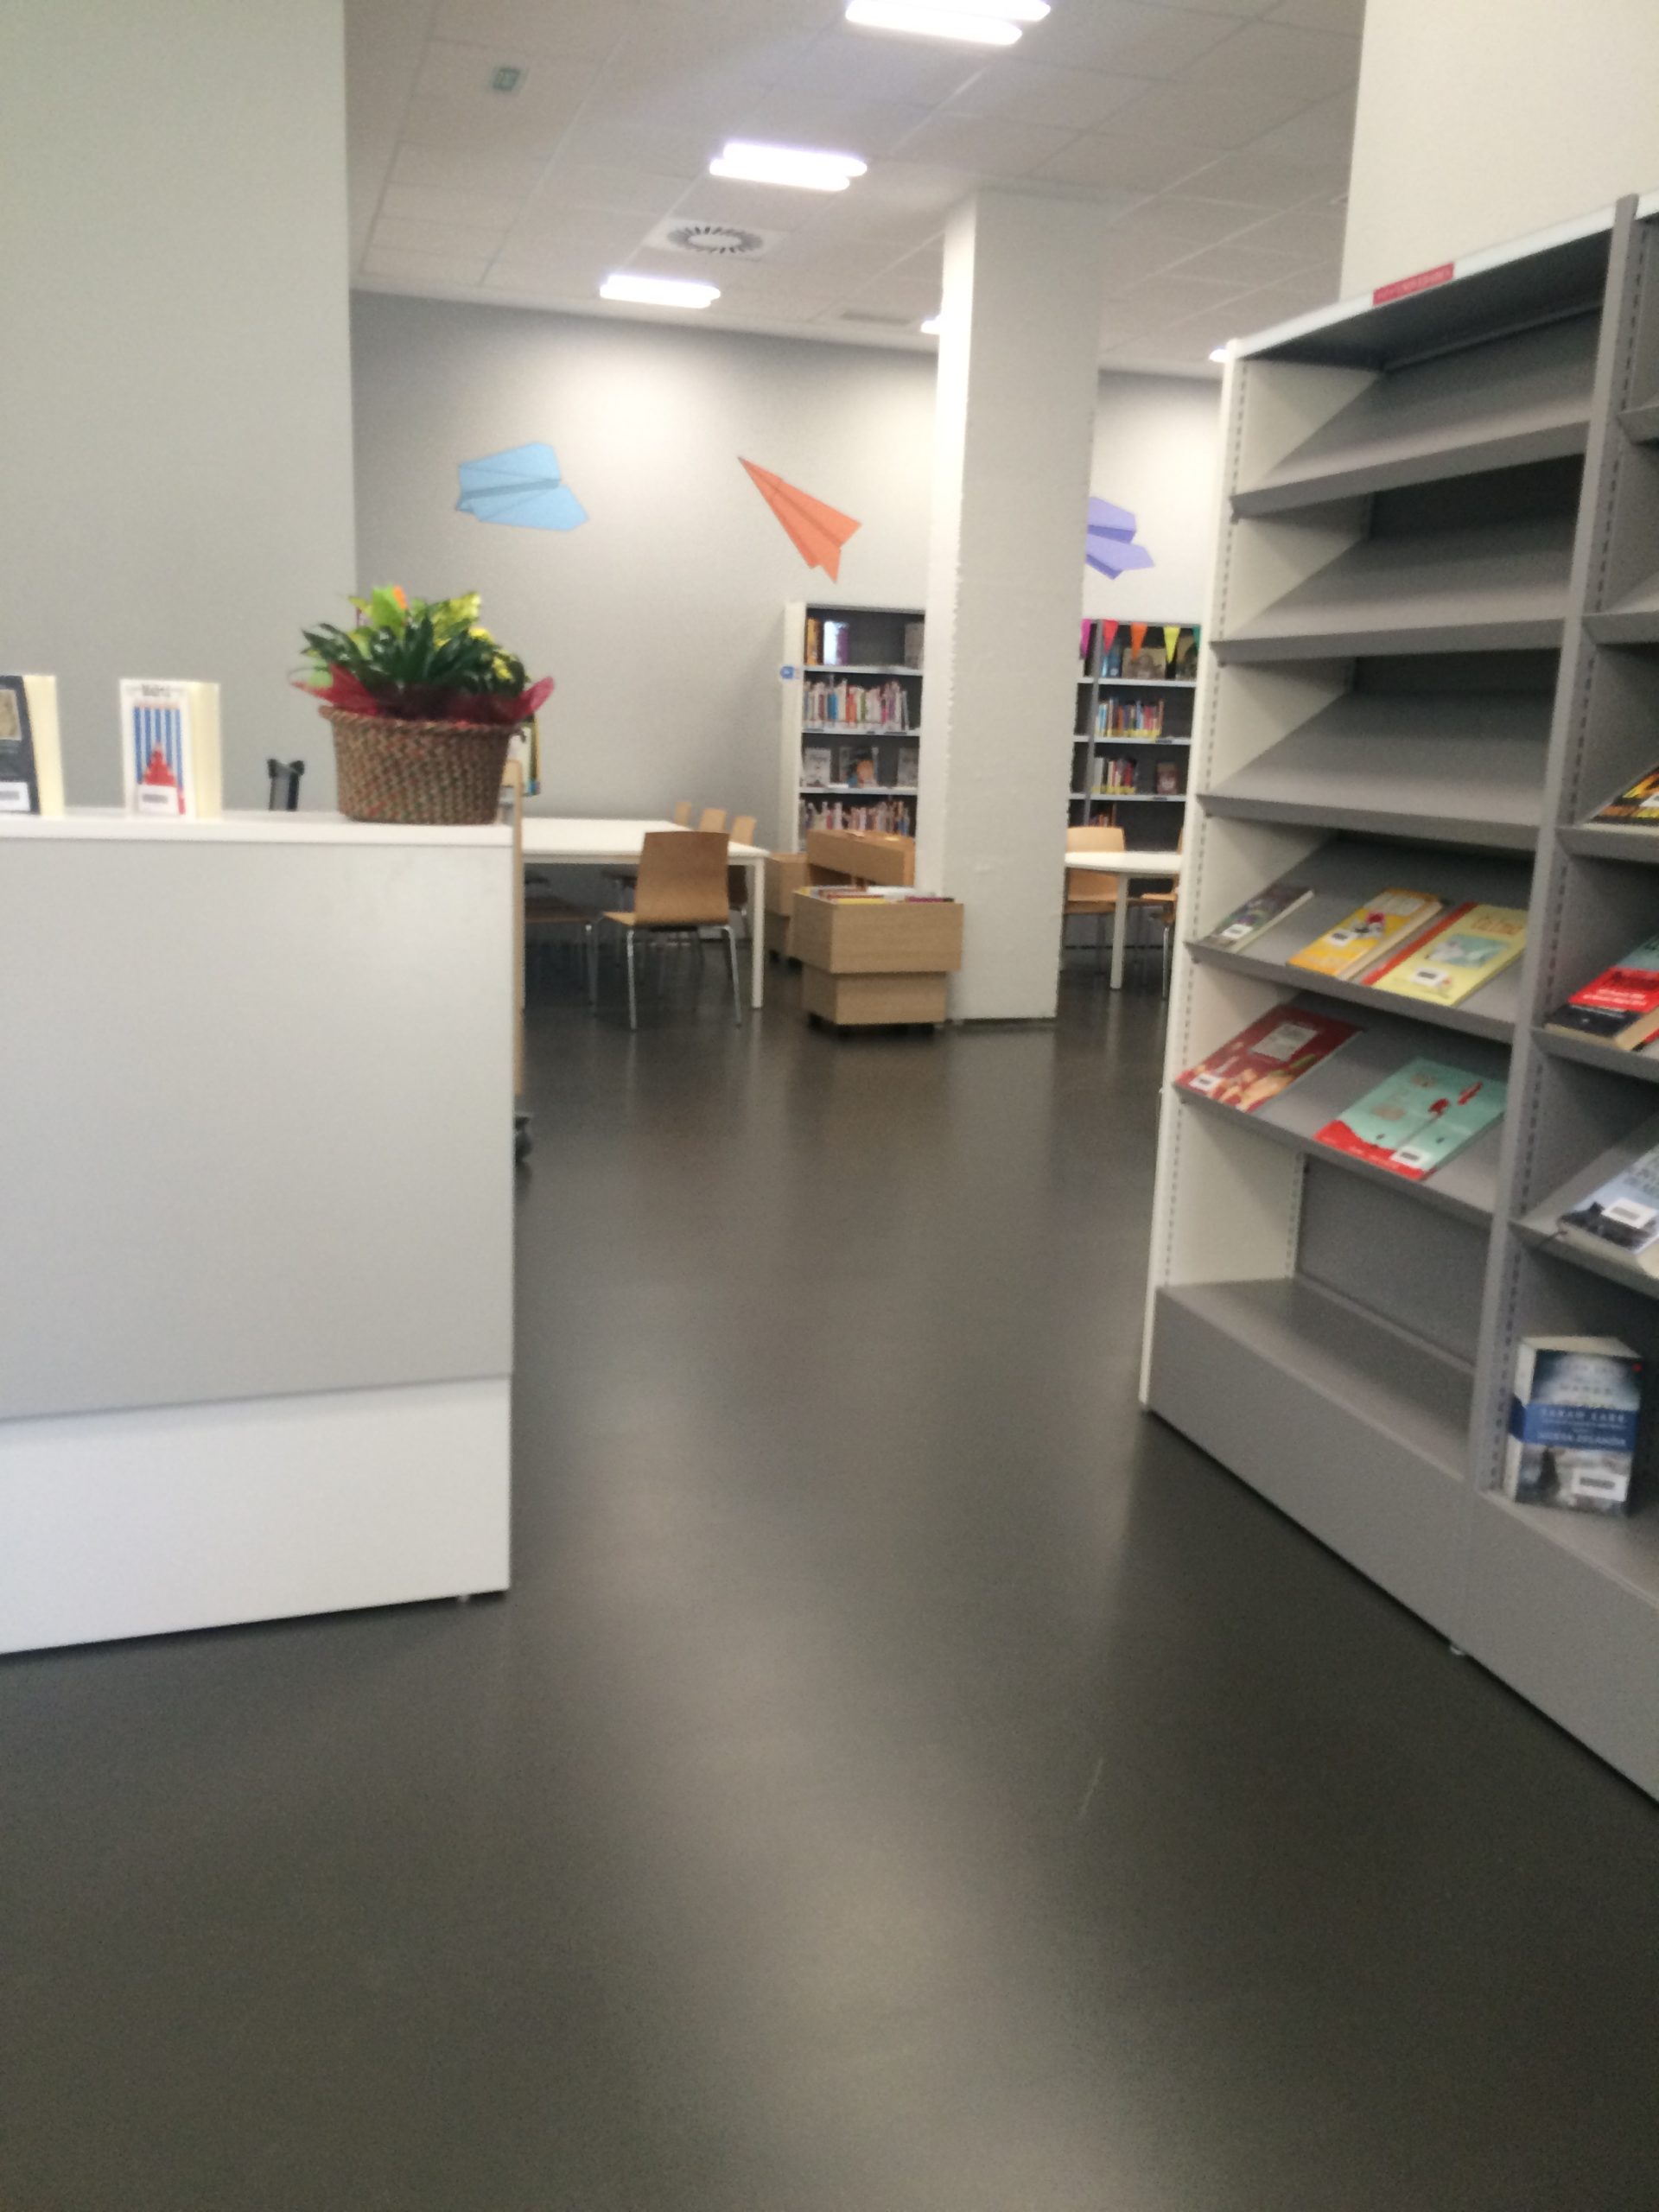 Biblioteca-Valdespartera-espacio-publico-equipamiento-interiorismo-y-amueblamiento-integral-de-oficinas-muebles-oficina